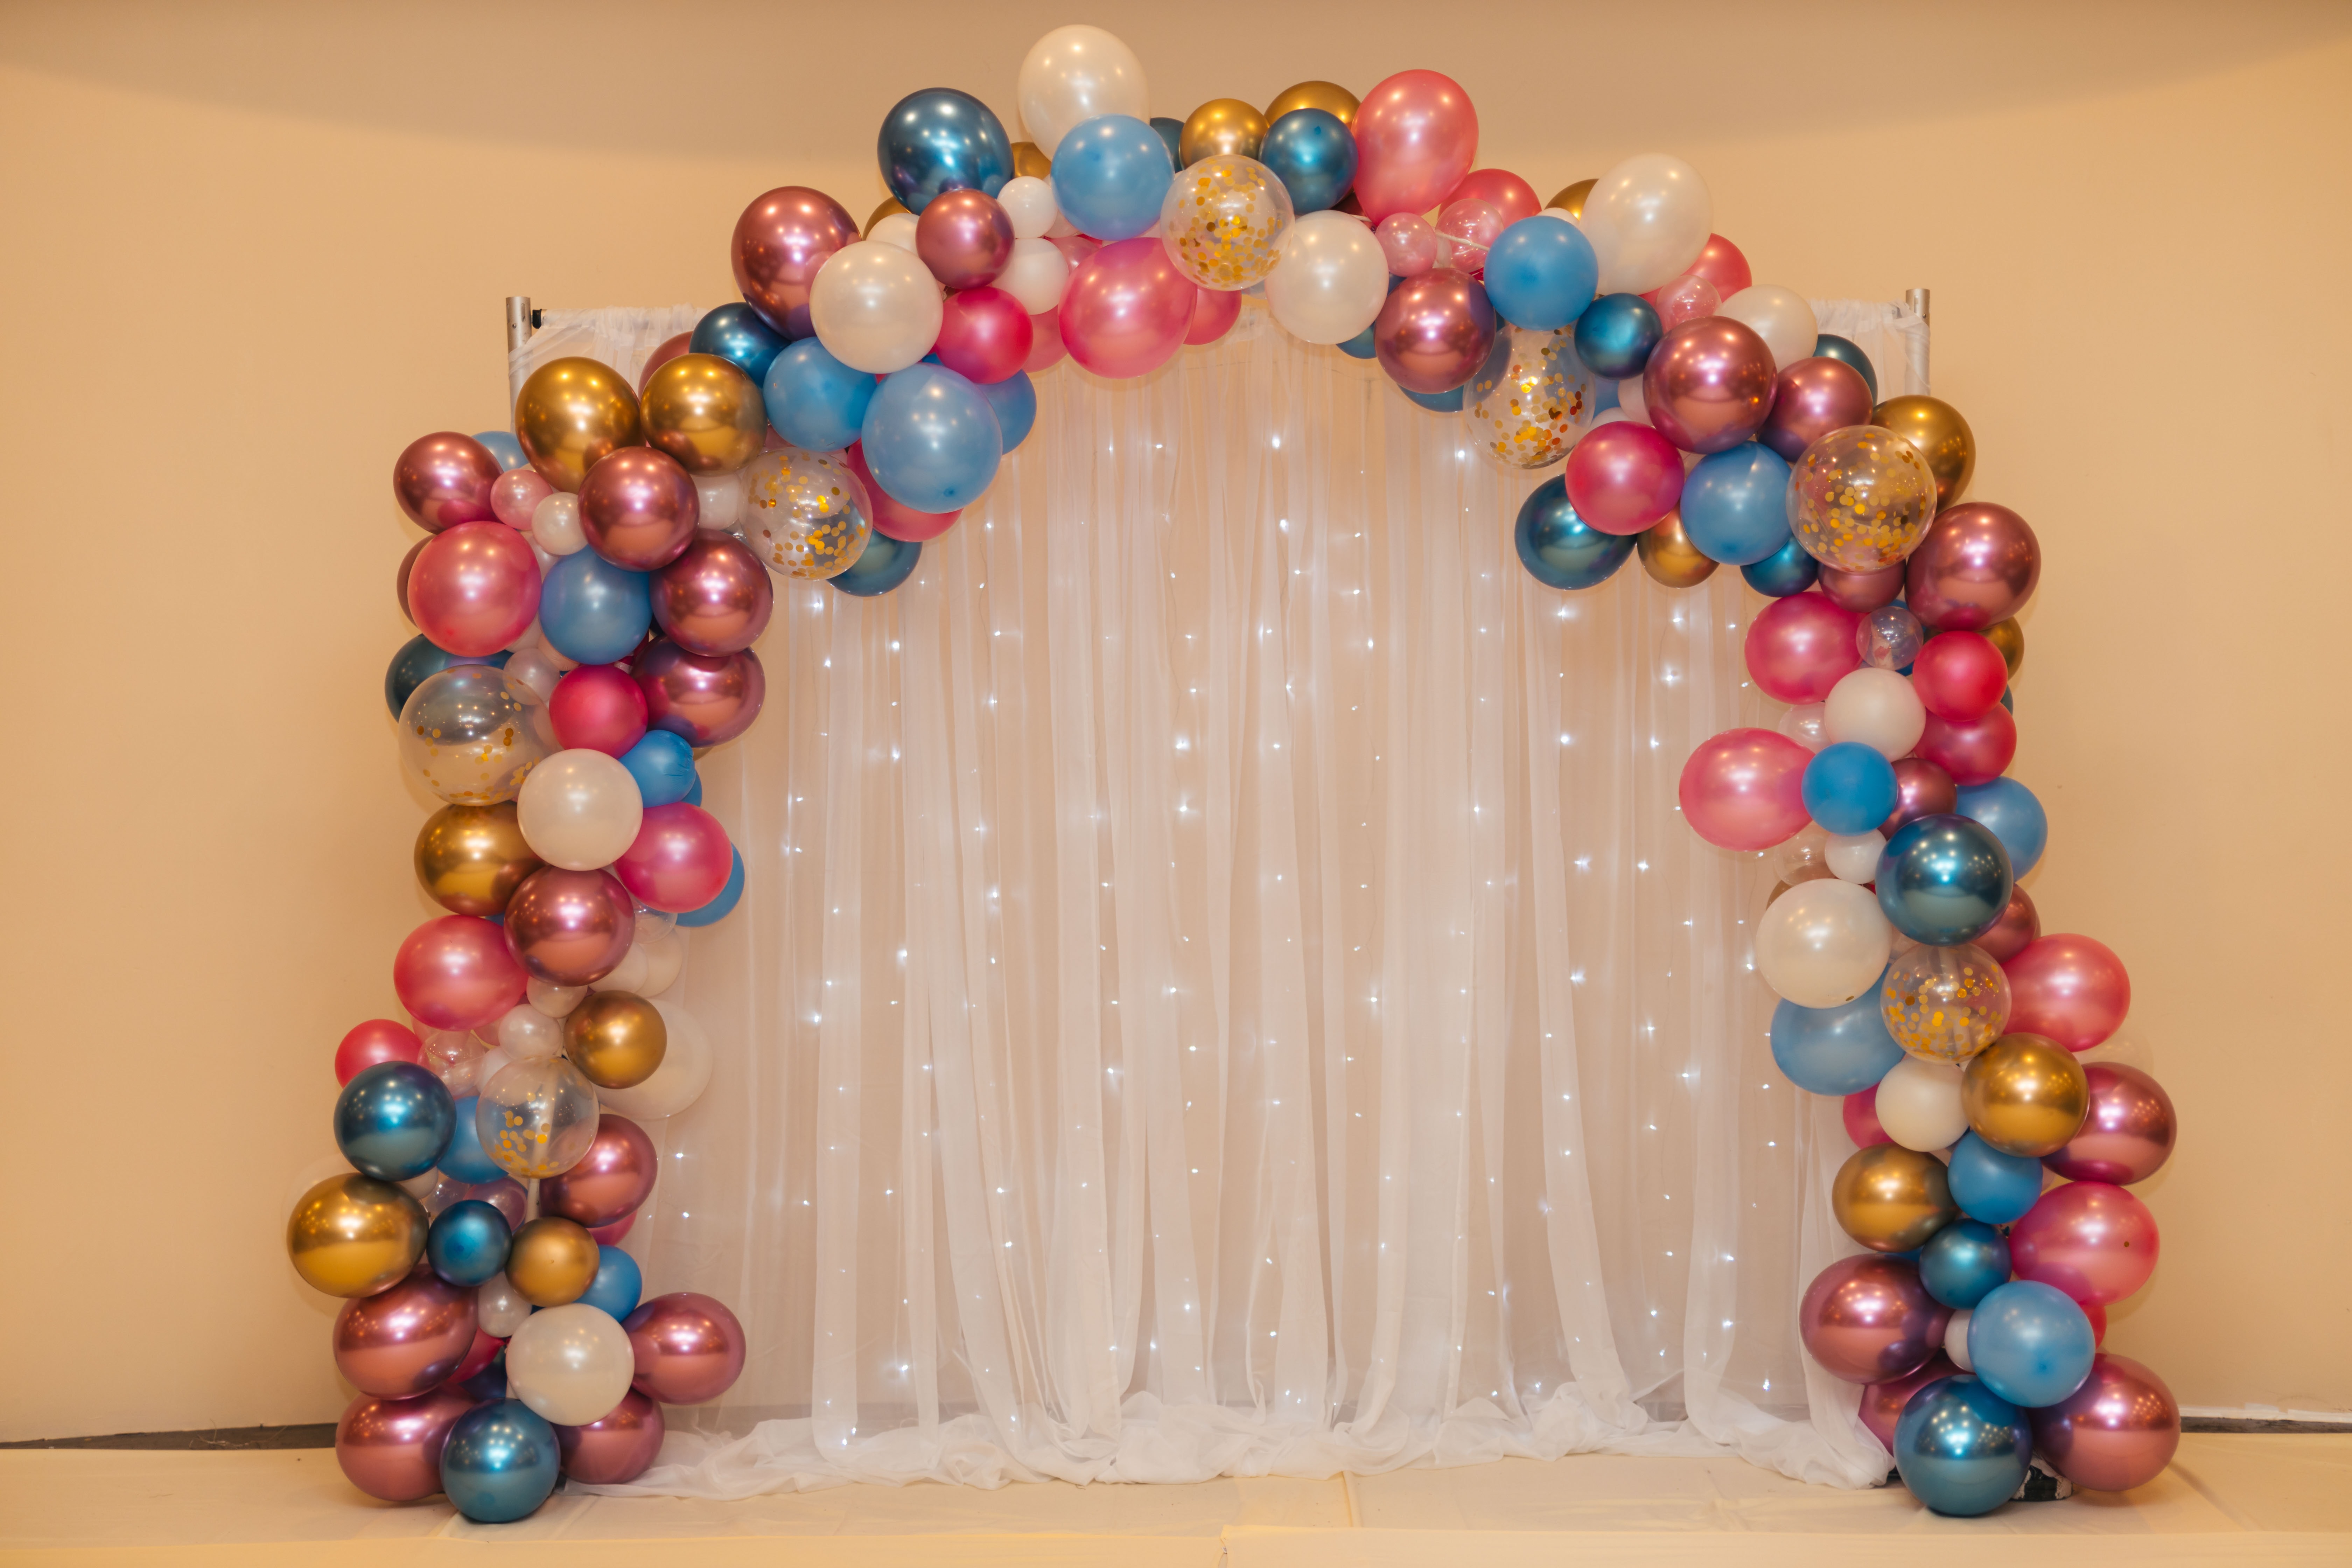 8 idées chics pour une décoration de mariage avec des ballons